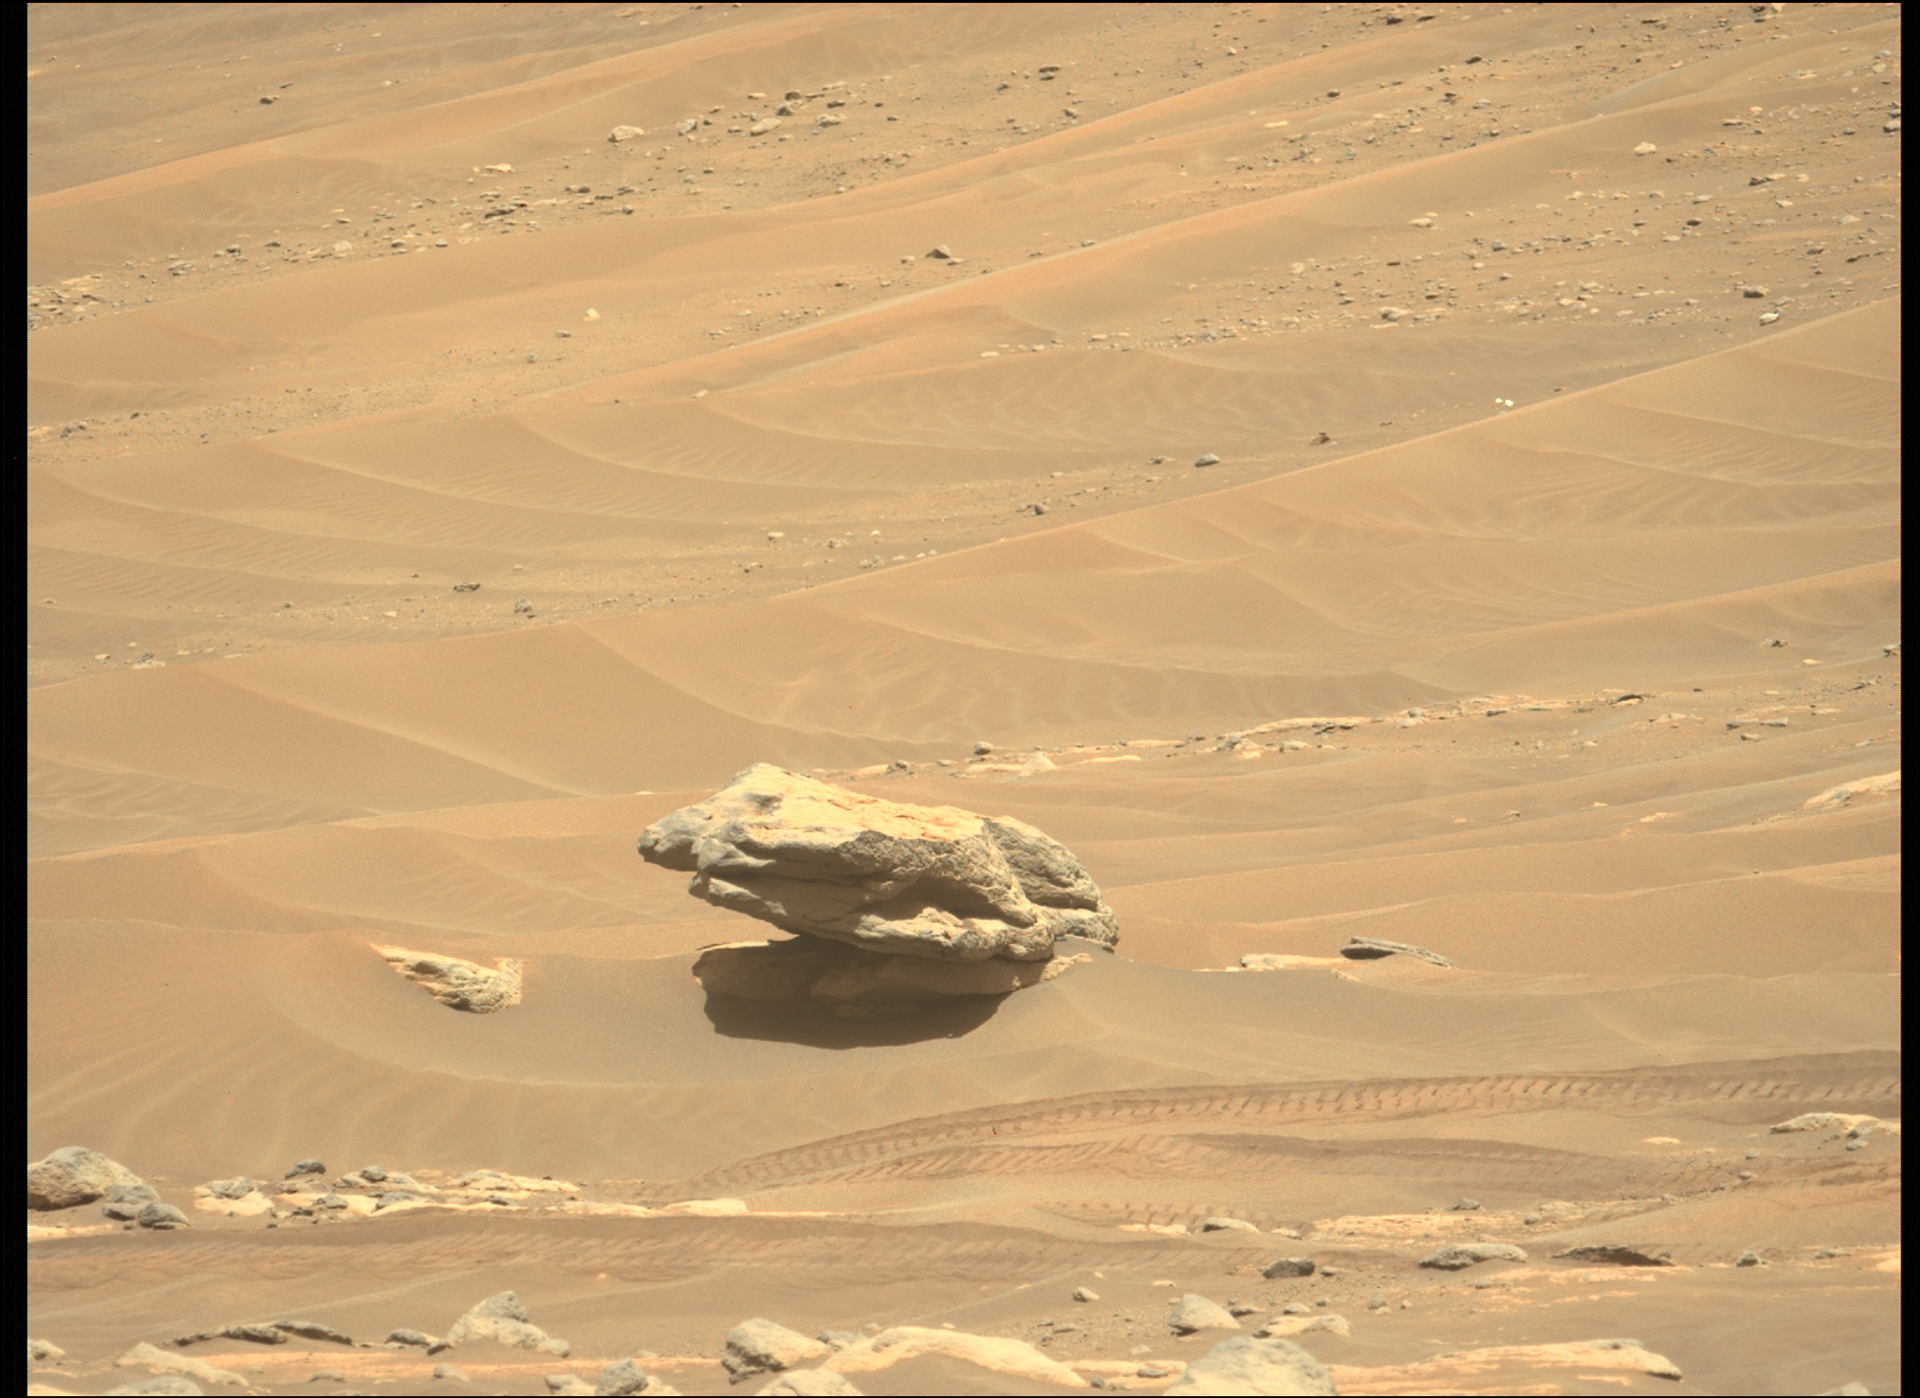 Rocha solitária entre as dunas capturada pelo rover Perseverance. Foto foi escolhida como imagem da semana no site da NASA - Sputnik Brasil, 1920, 09.11.2021